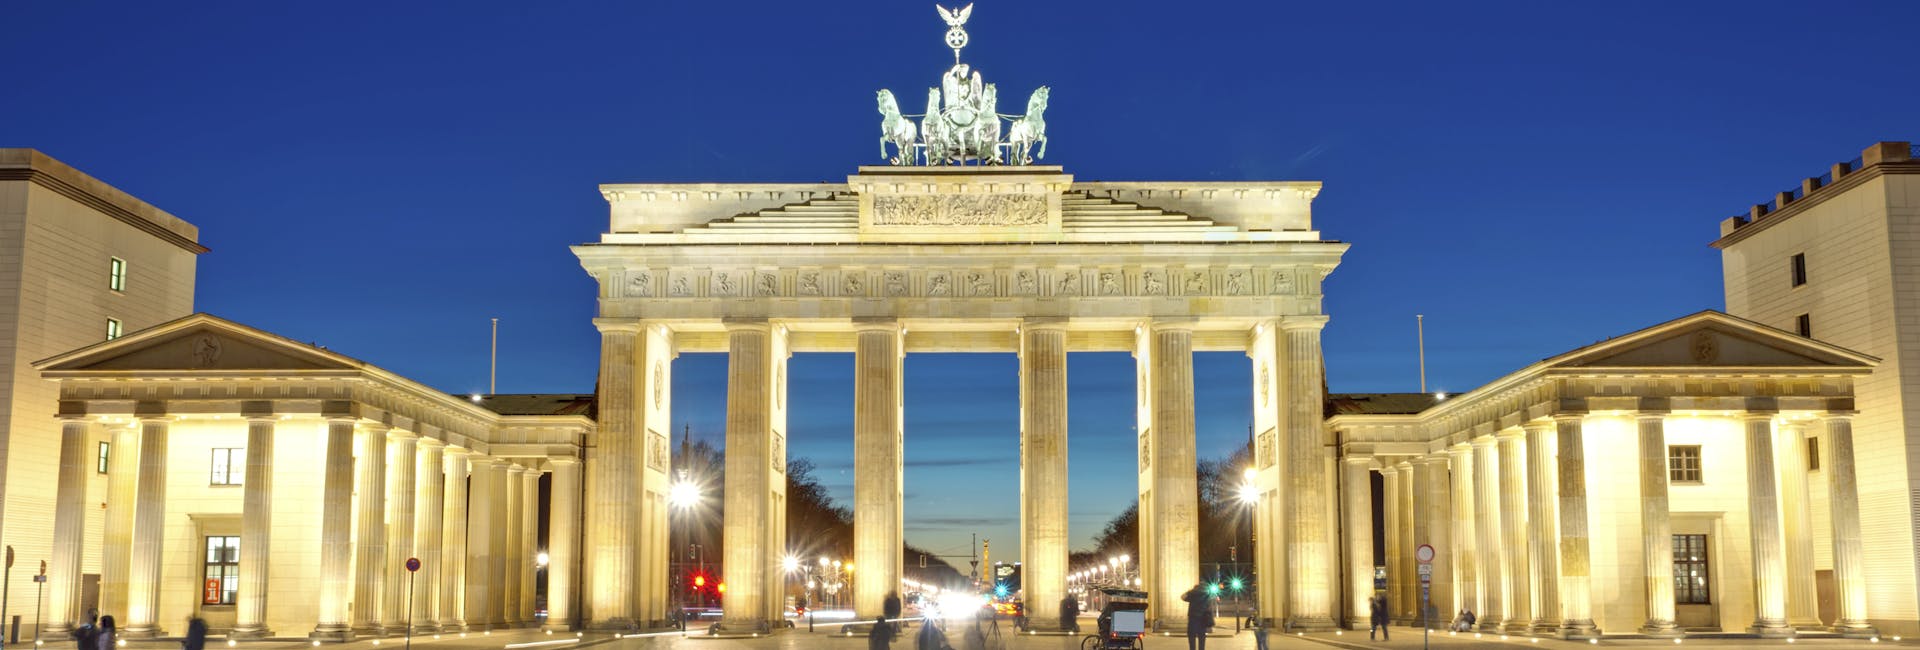 Berliini Brandenburgin portti